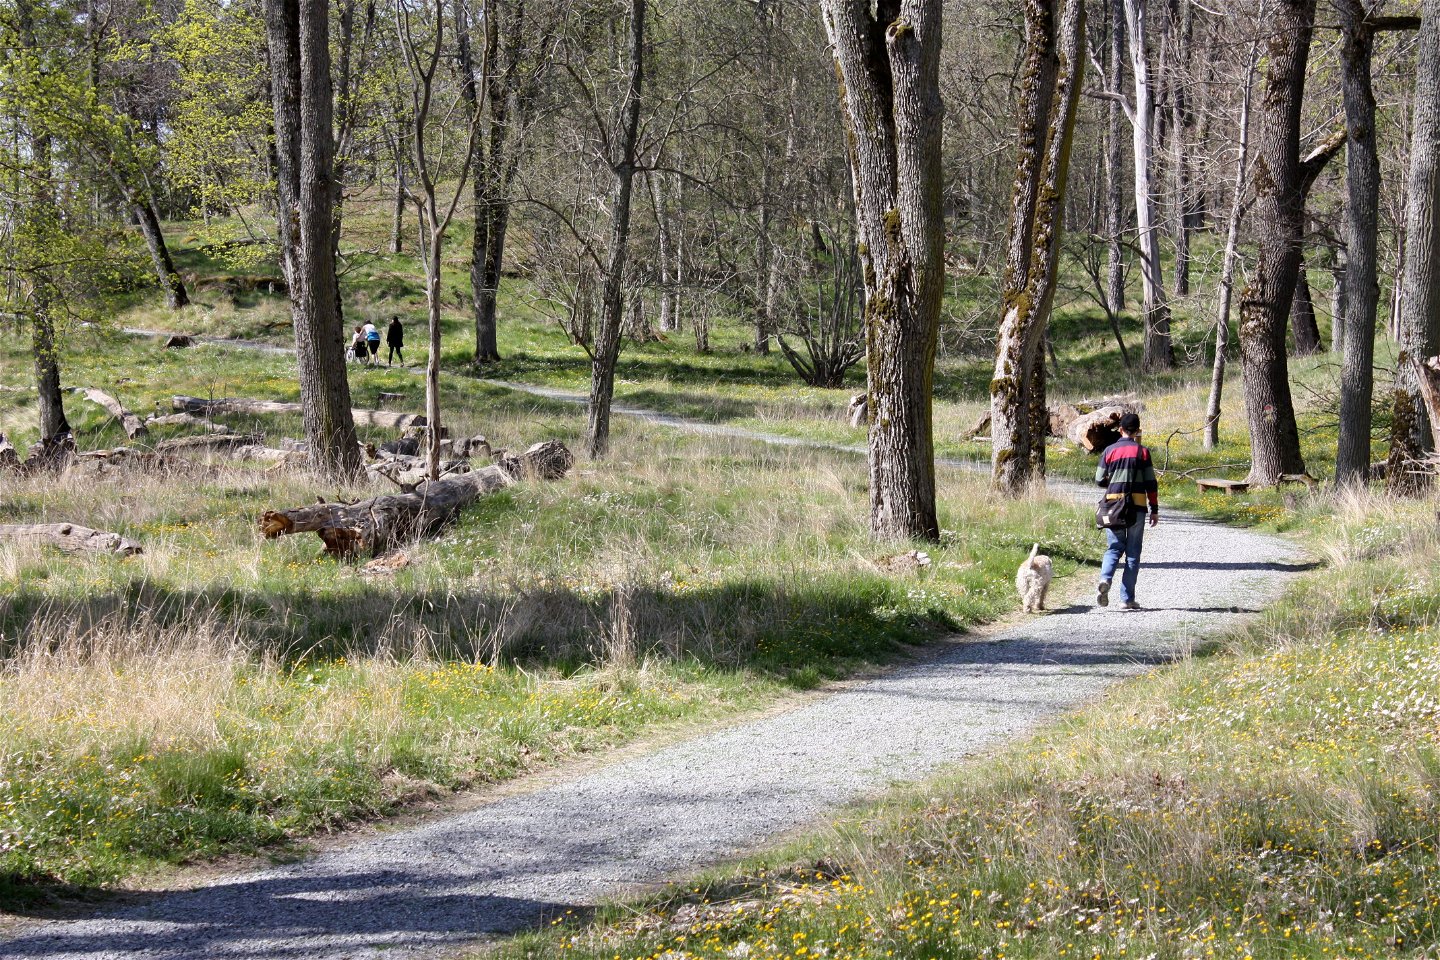 Flera personer går på en grusad stig genom en skog. Bredvid en av personerna går en hund.